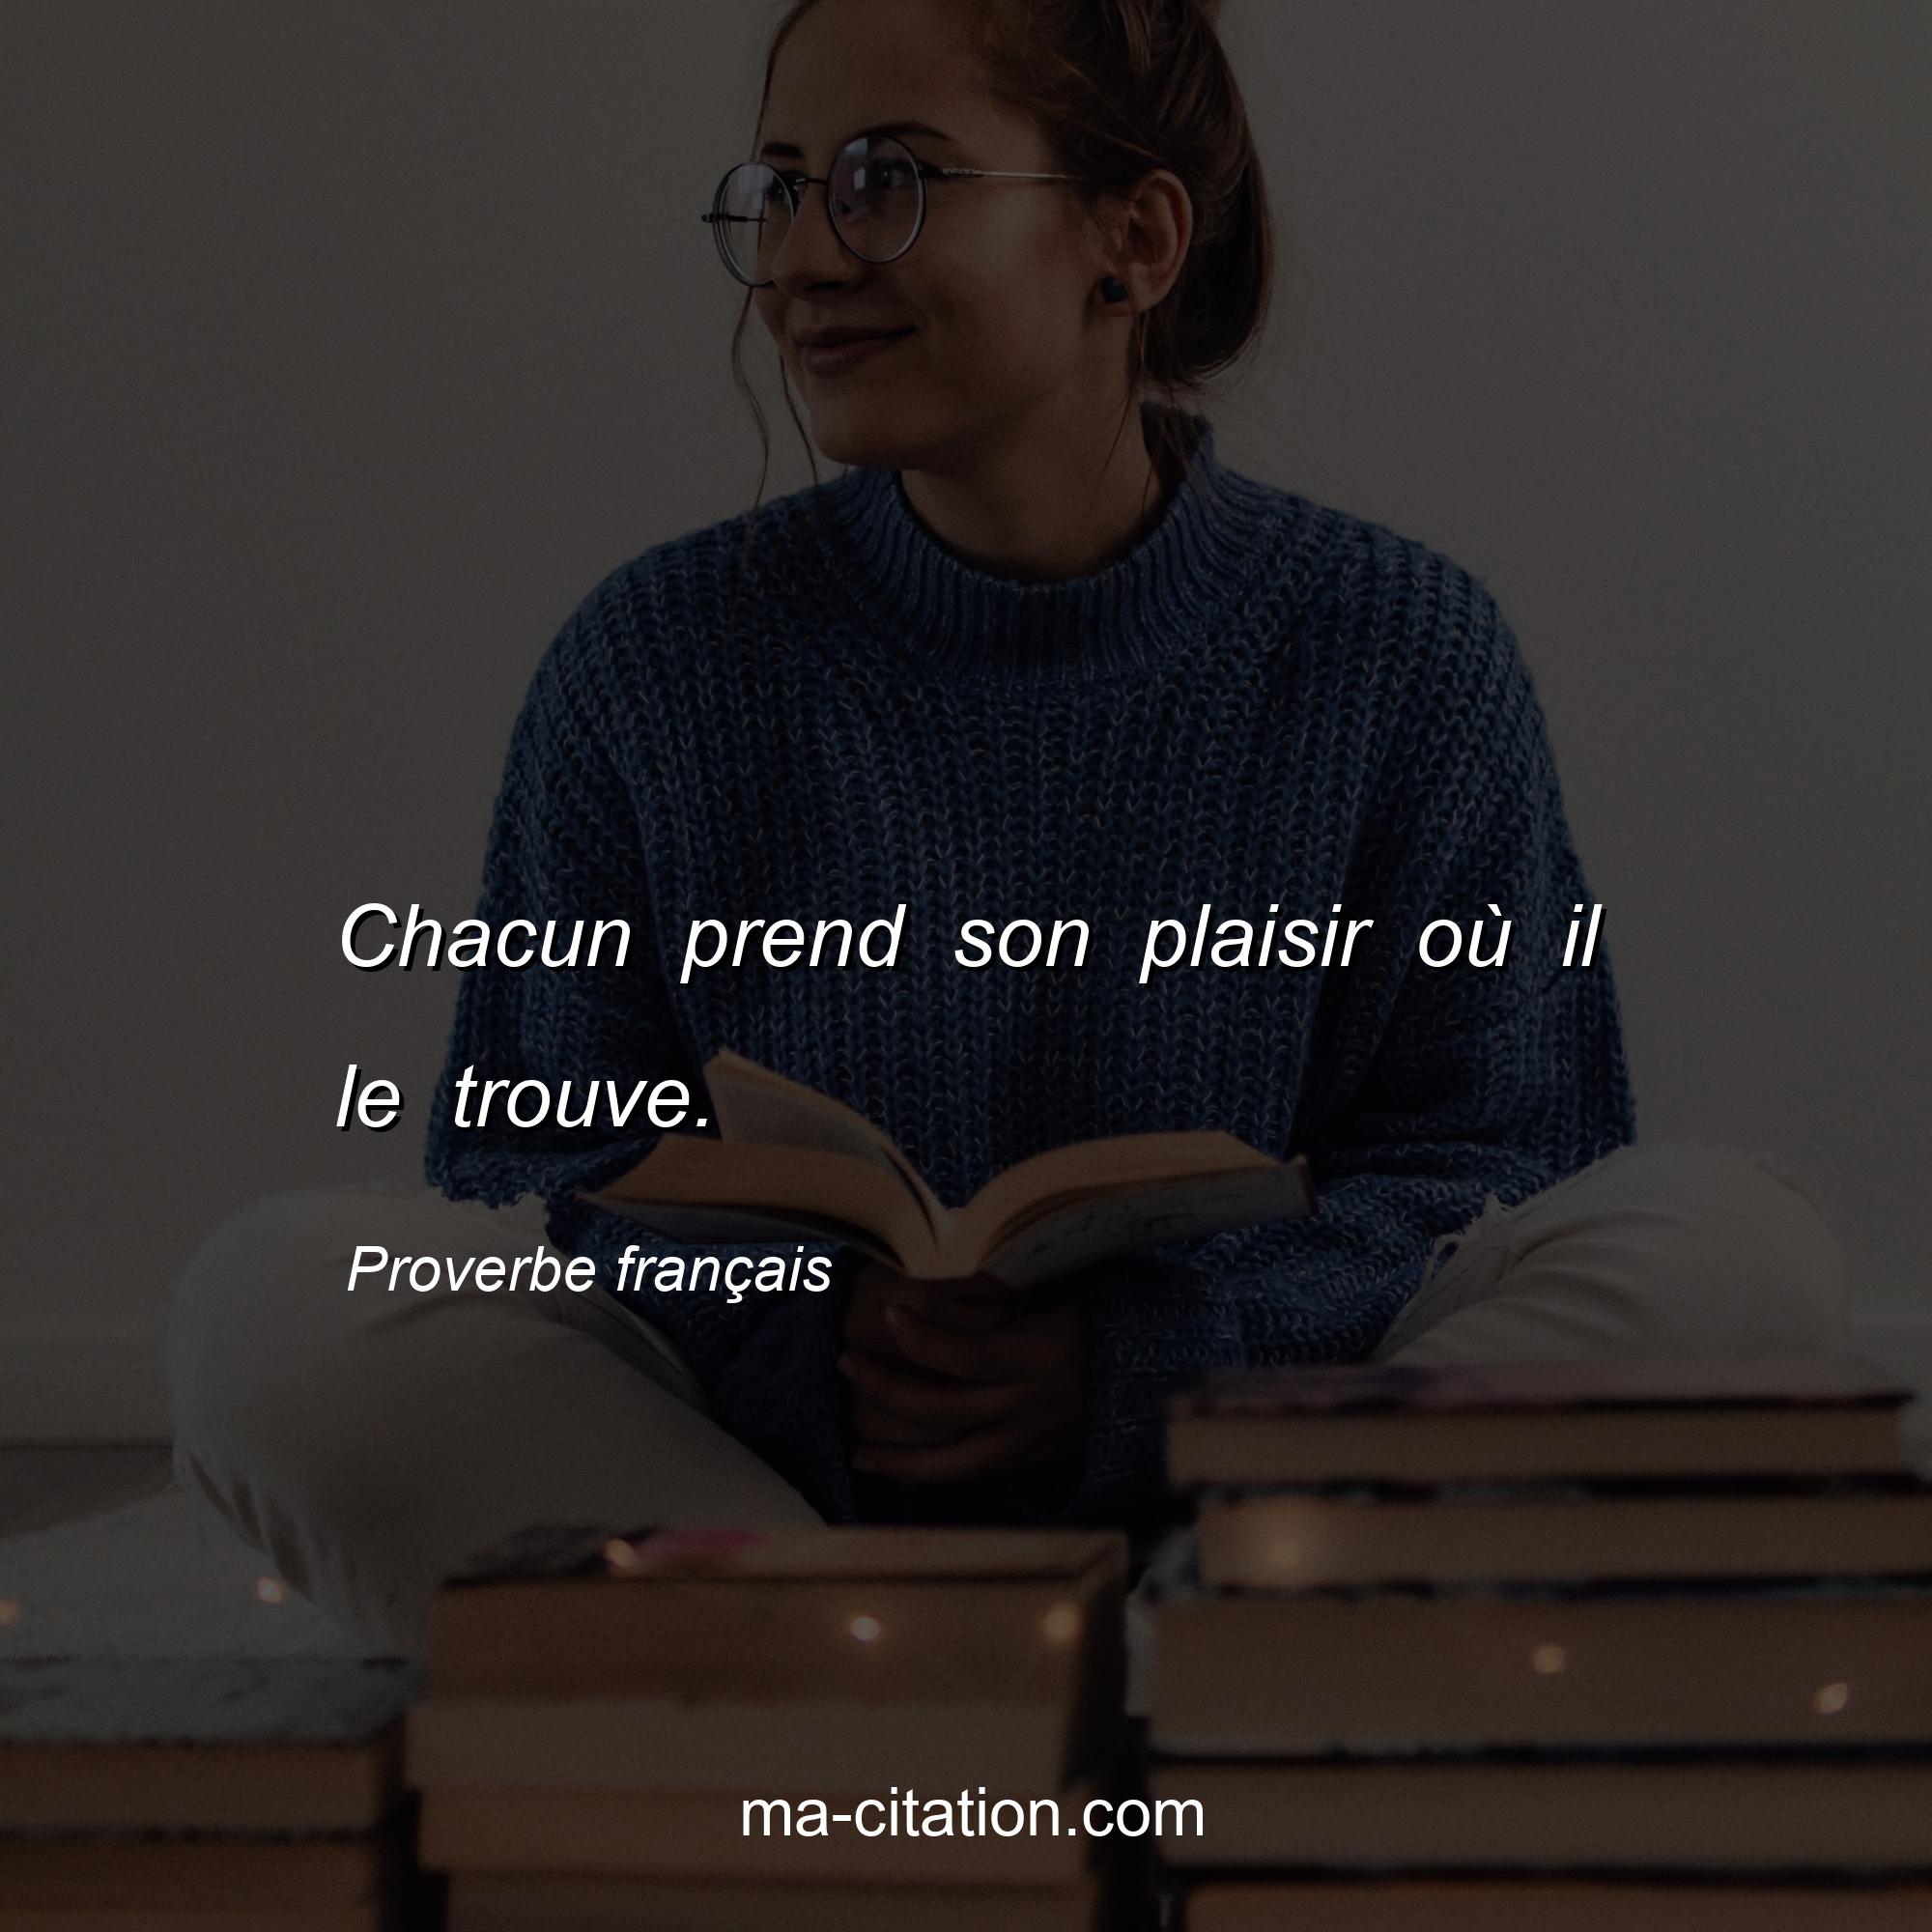 Proverbe français : Chacun prend son plaisir où il le trouve.